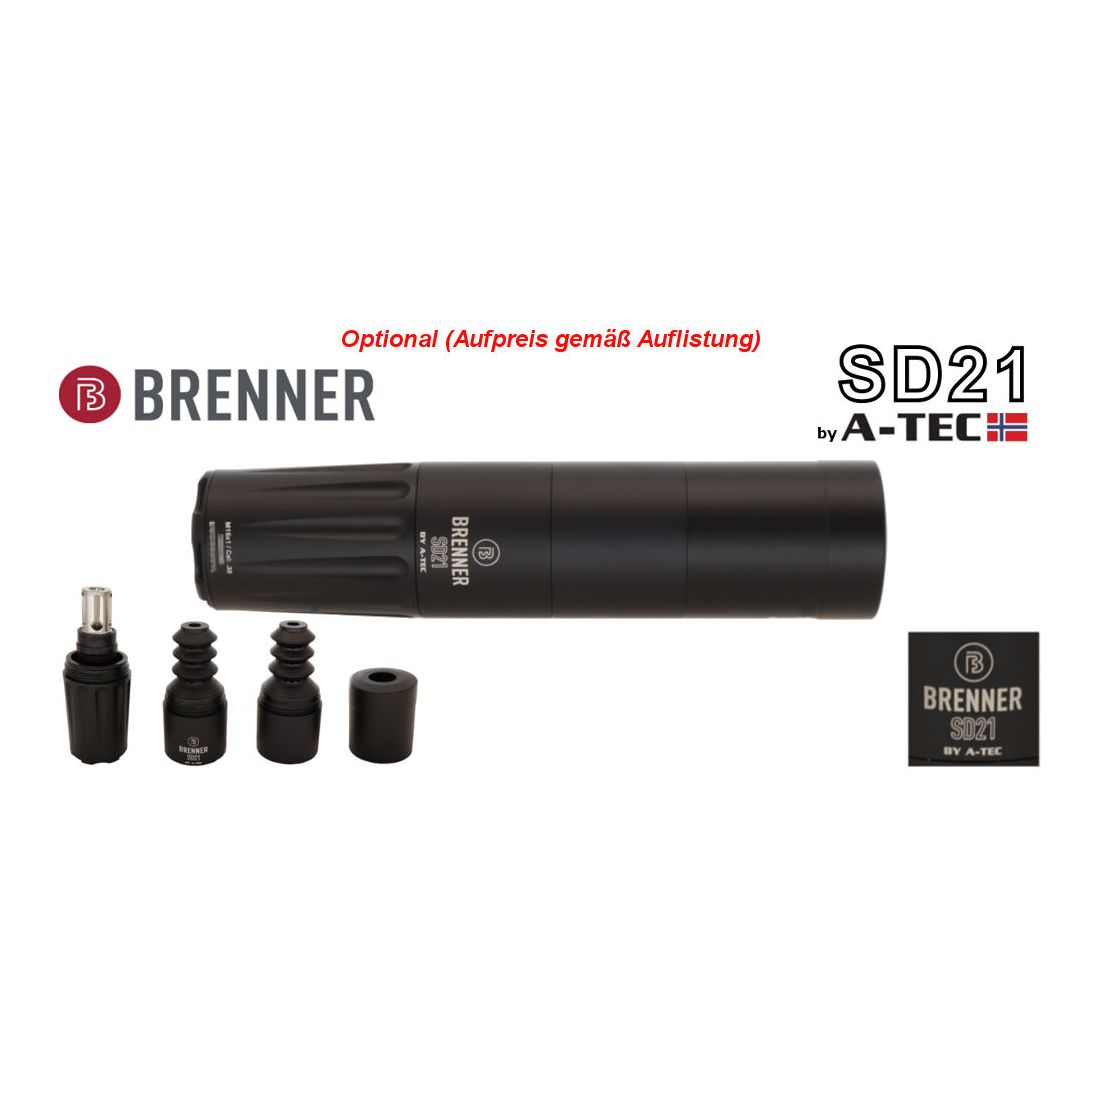 Brenner Komplettpaket:	 Brenner BR 20 Kunststoff- Schaft mit Hawke Endurance 2.5-10x50 Repetierer